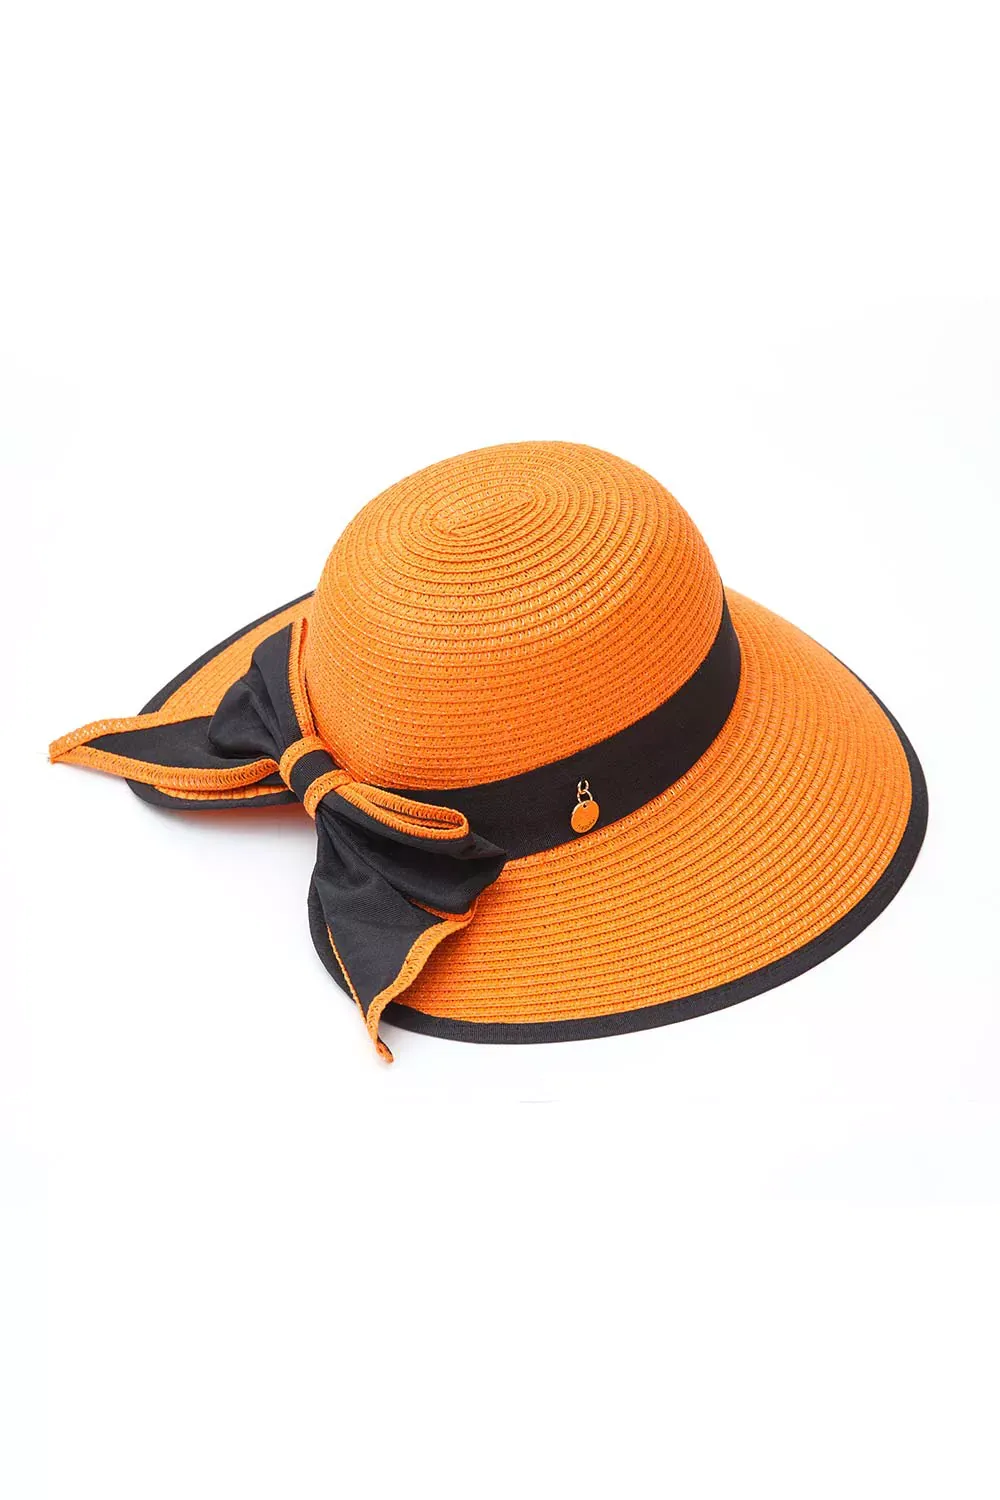 hat06 orange